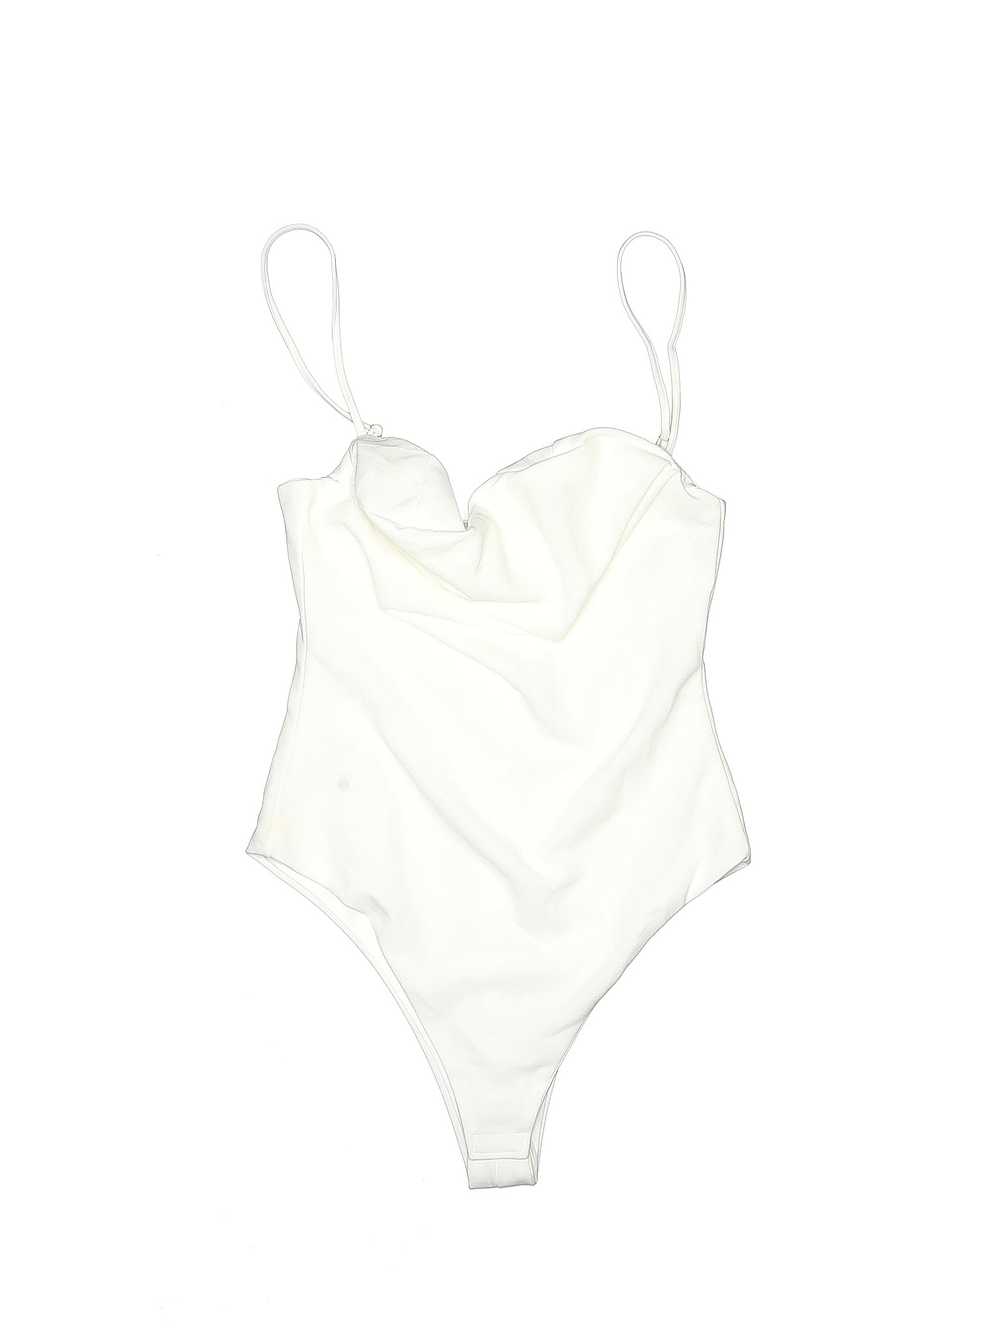 Unbranded Women White Bodysuit S - image 1